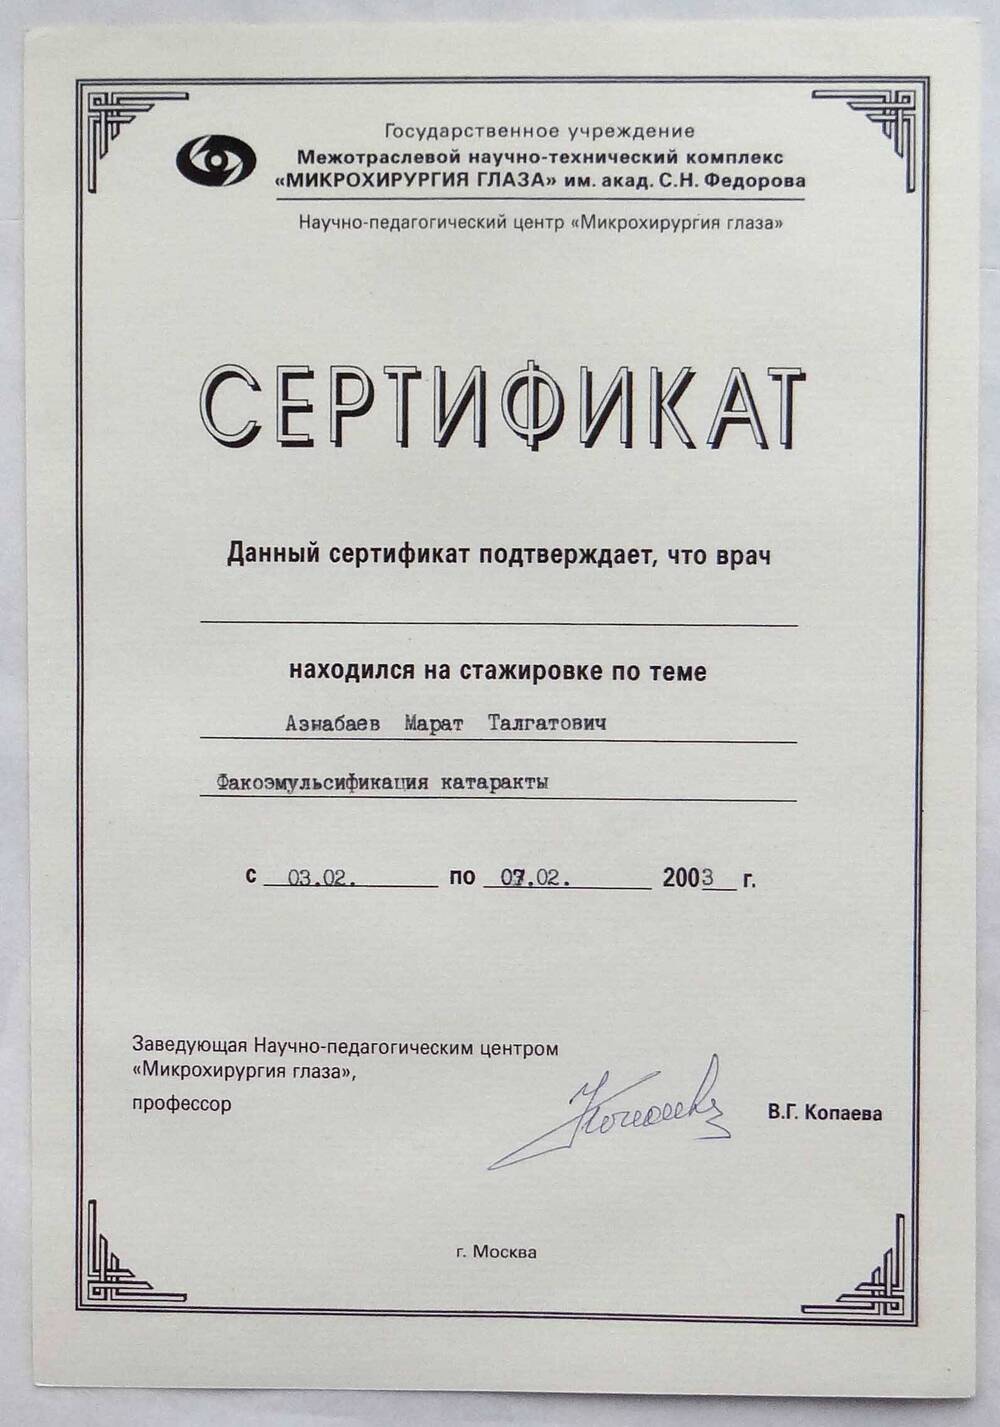 Сертификат, подтверждающий, что врач Азнабаев М.Т. находился на стажировке по теме Факоэмульсификация с 03.02. по 07.02.2003г. Г.Москва.